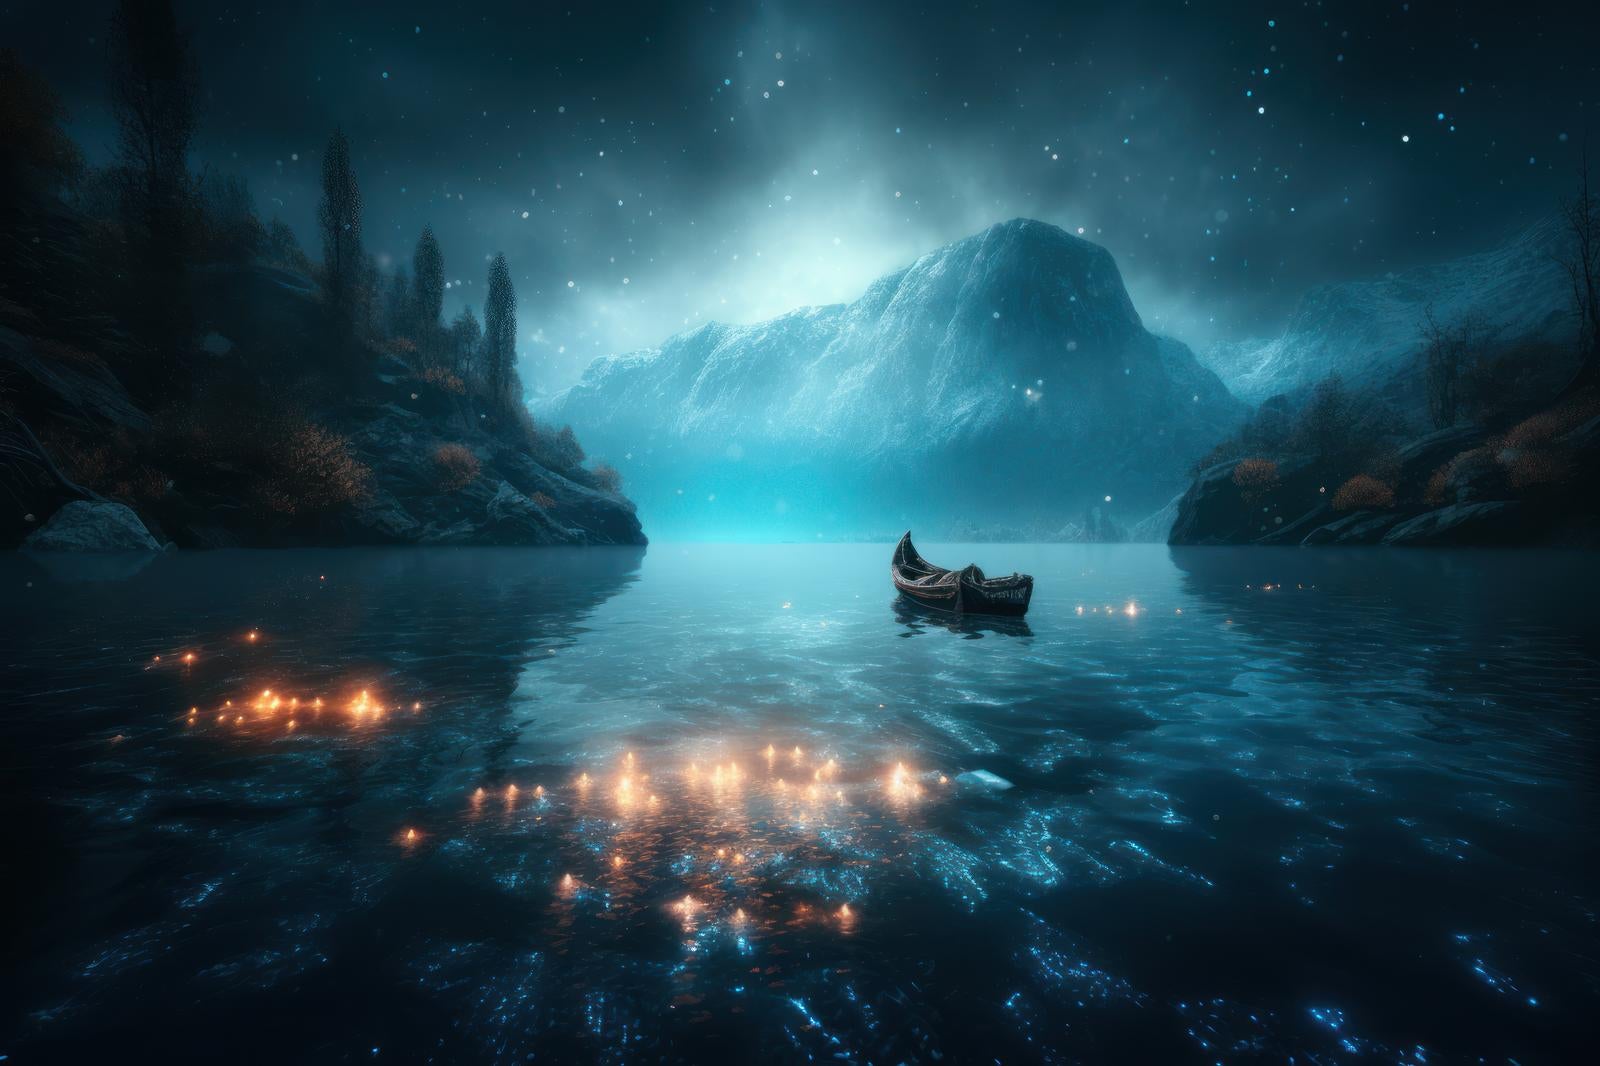 「小舟が揺れる静寂なる神聖な泉」の写真